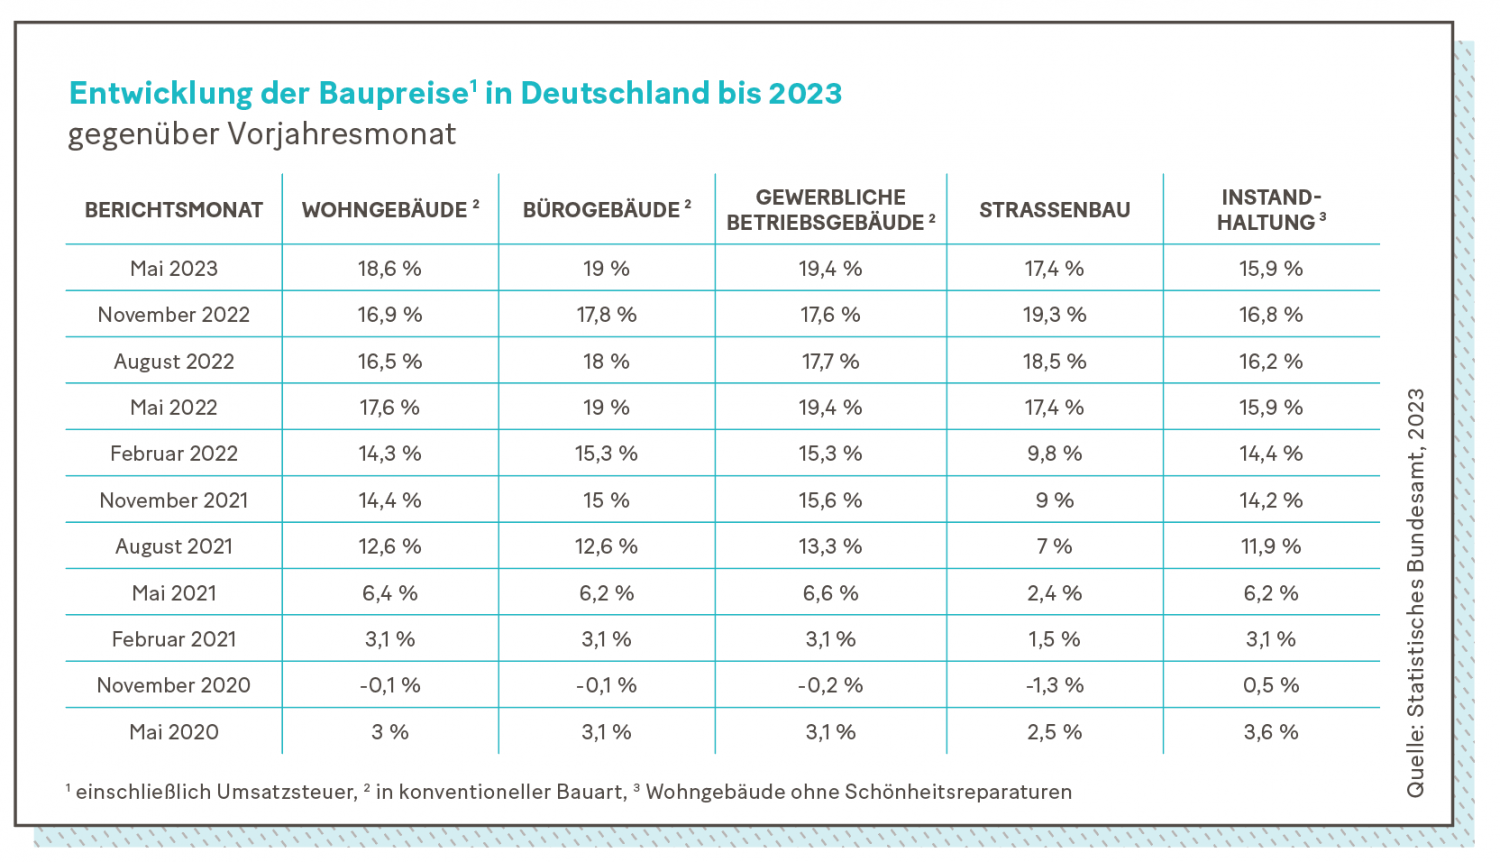 Grafik: Entwicklung der Baupreise in Deutschland bis 2023 